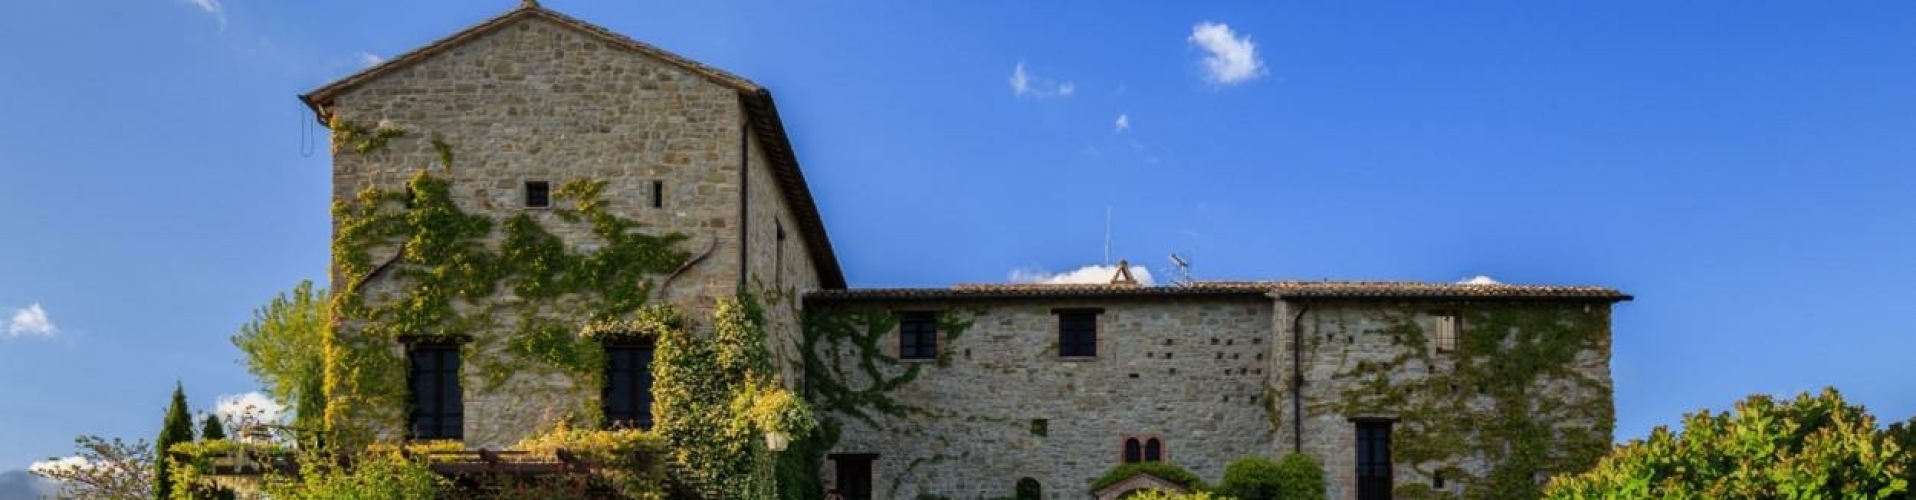 Castello di Petrata Assisi Umbrie